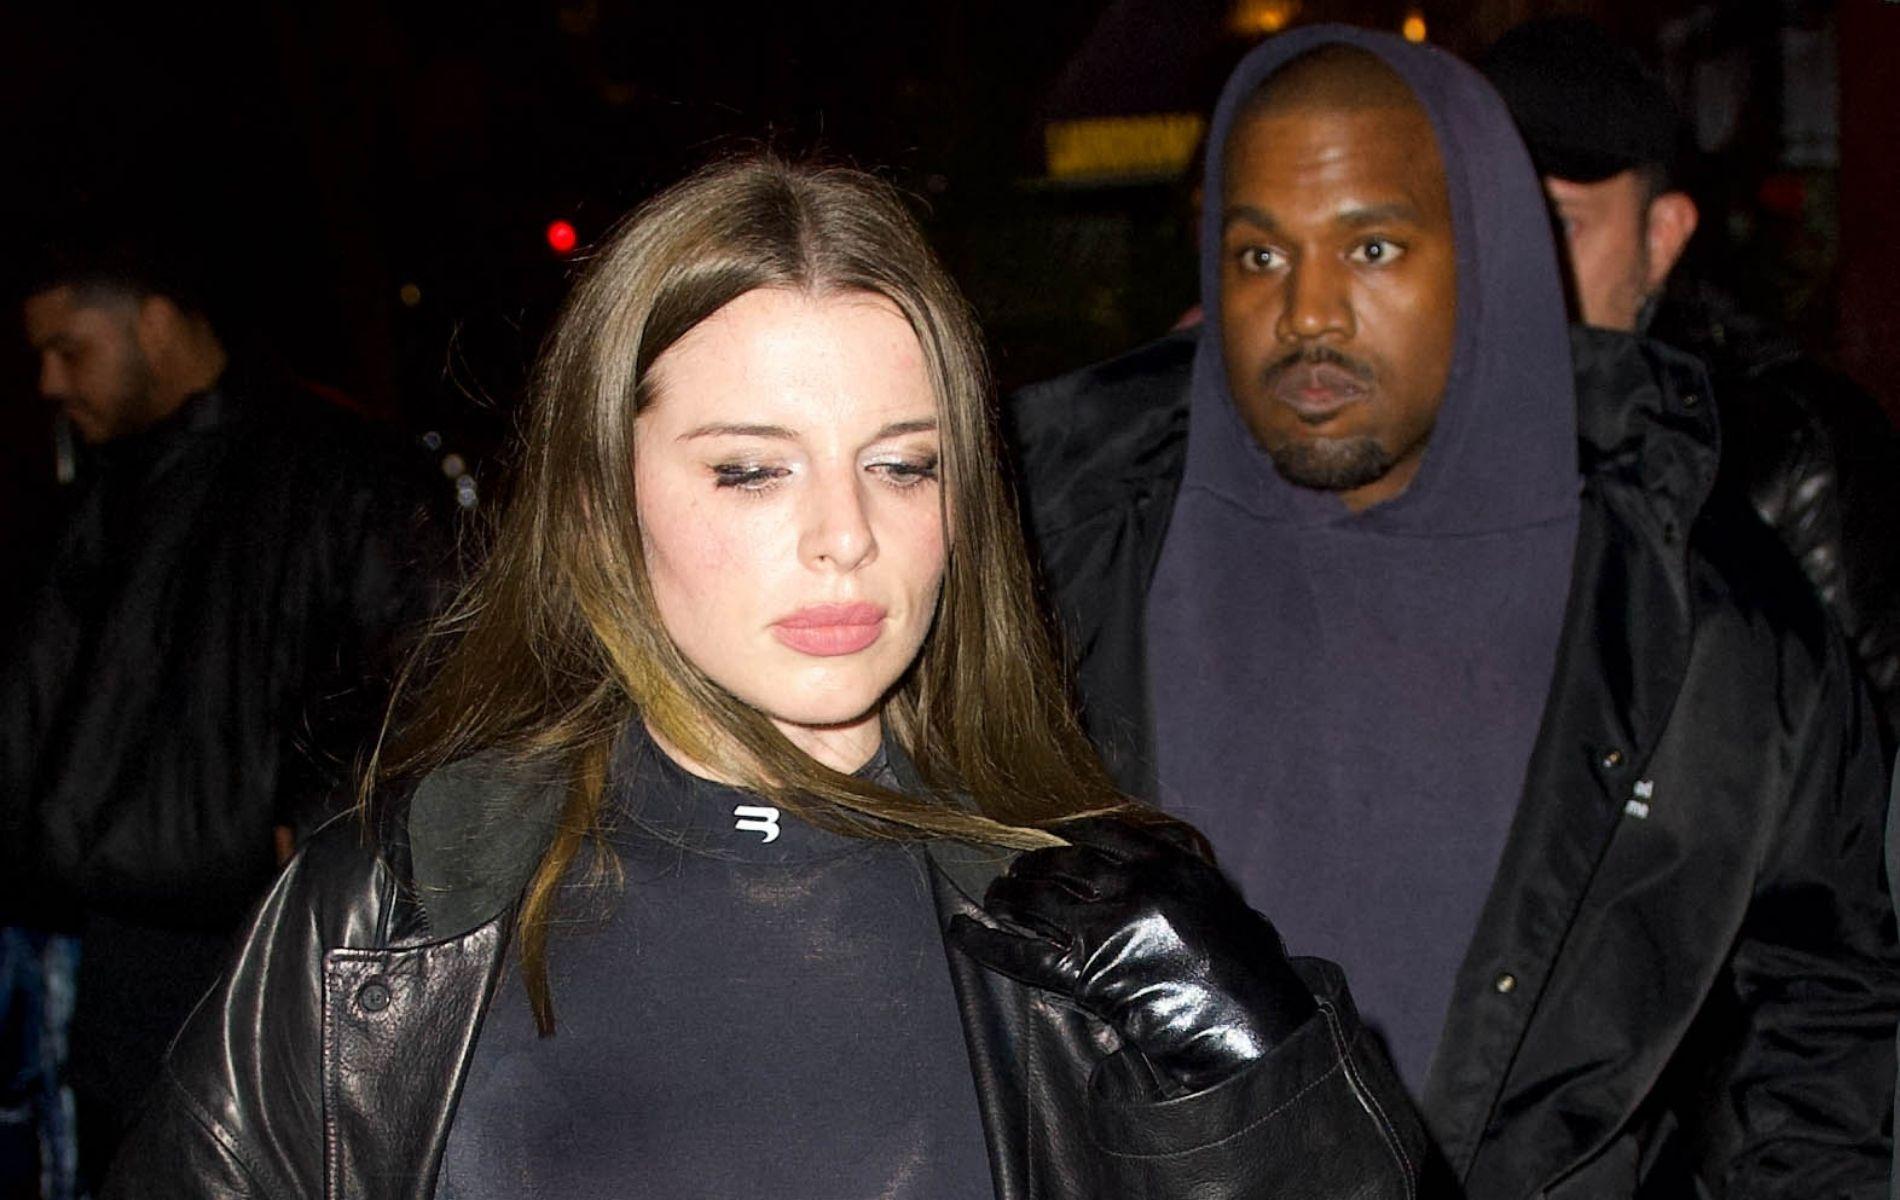 La connexion a été immédiate" : l'actrice Julia Fox officialise sa relation  avec Kanye West - Madame Figaro